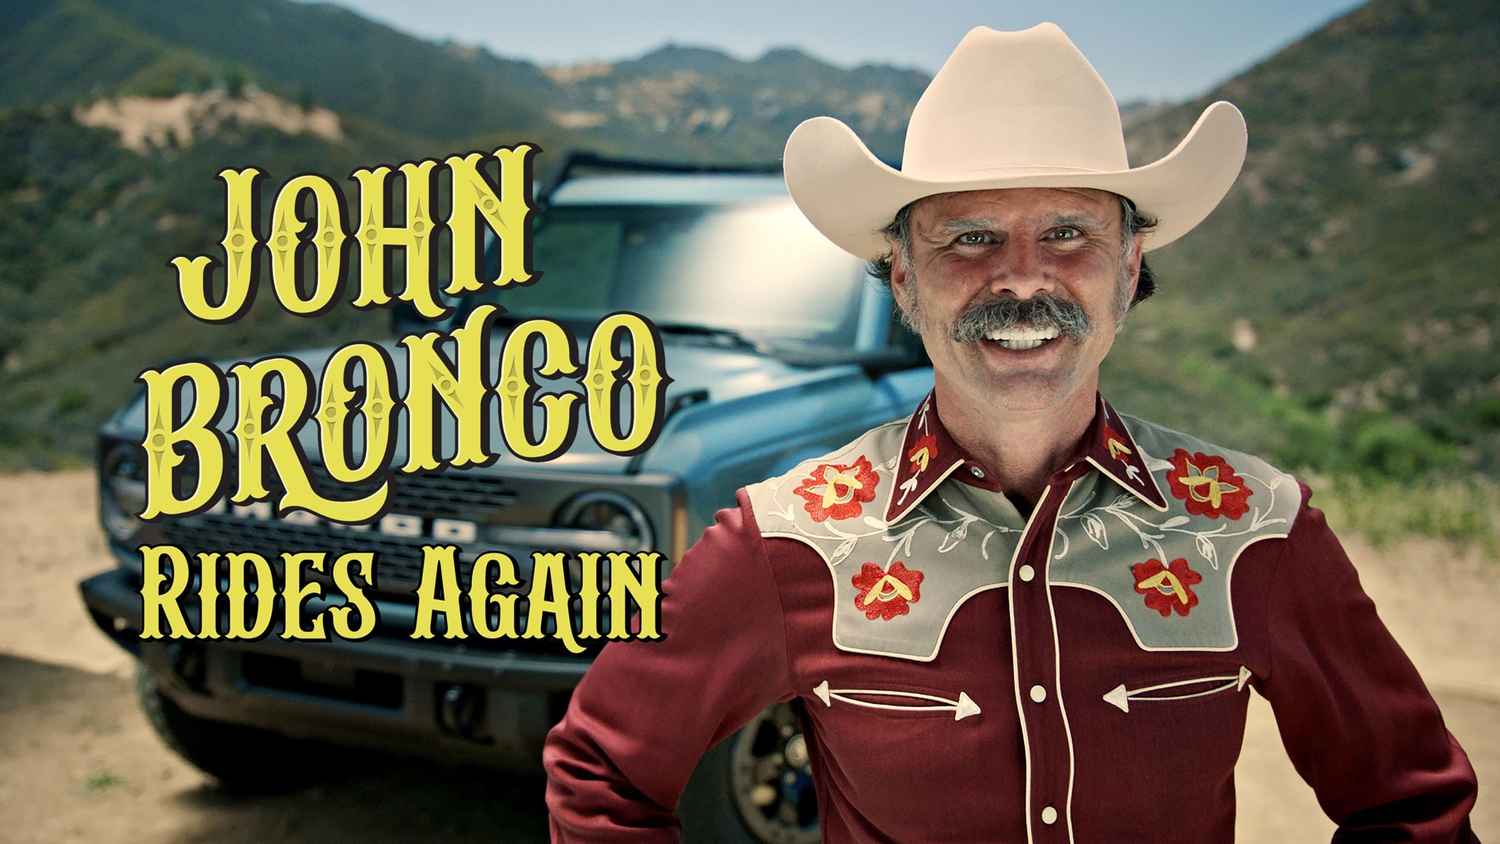 John Bronco Rides Again